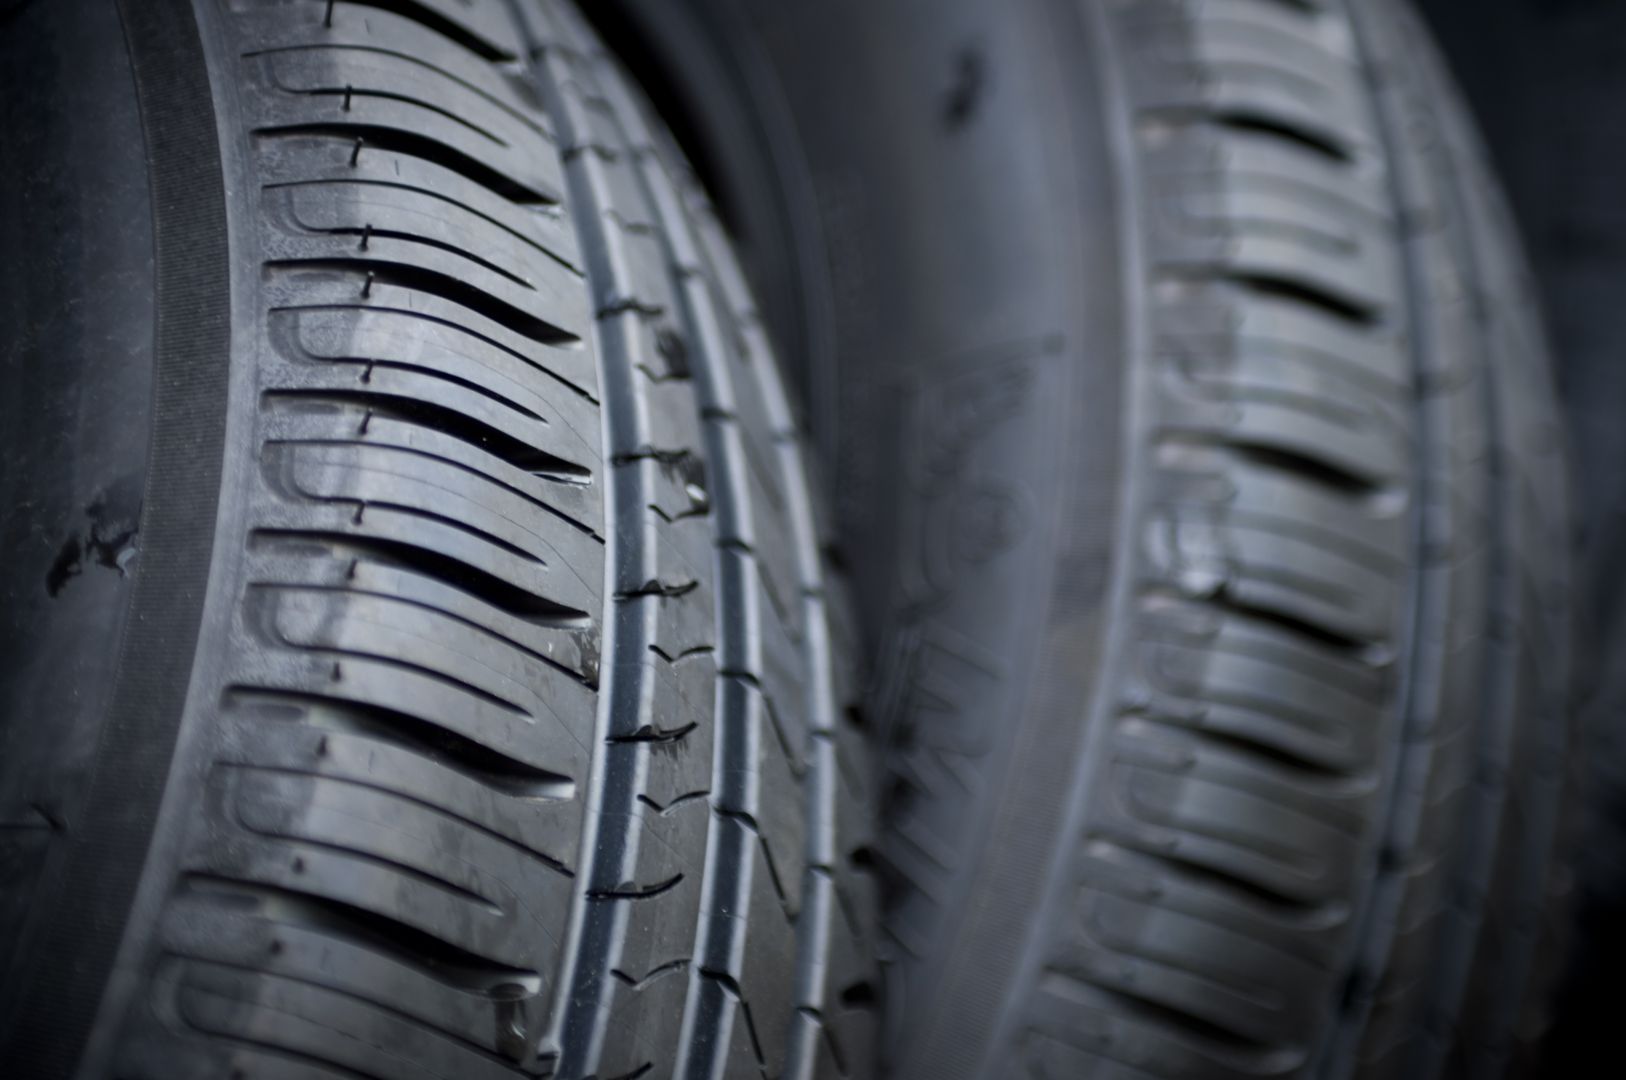 Zakázka na pneumatiky pro nákladní automobily a návěsy (Pneuservis) - Opava